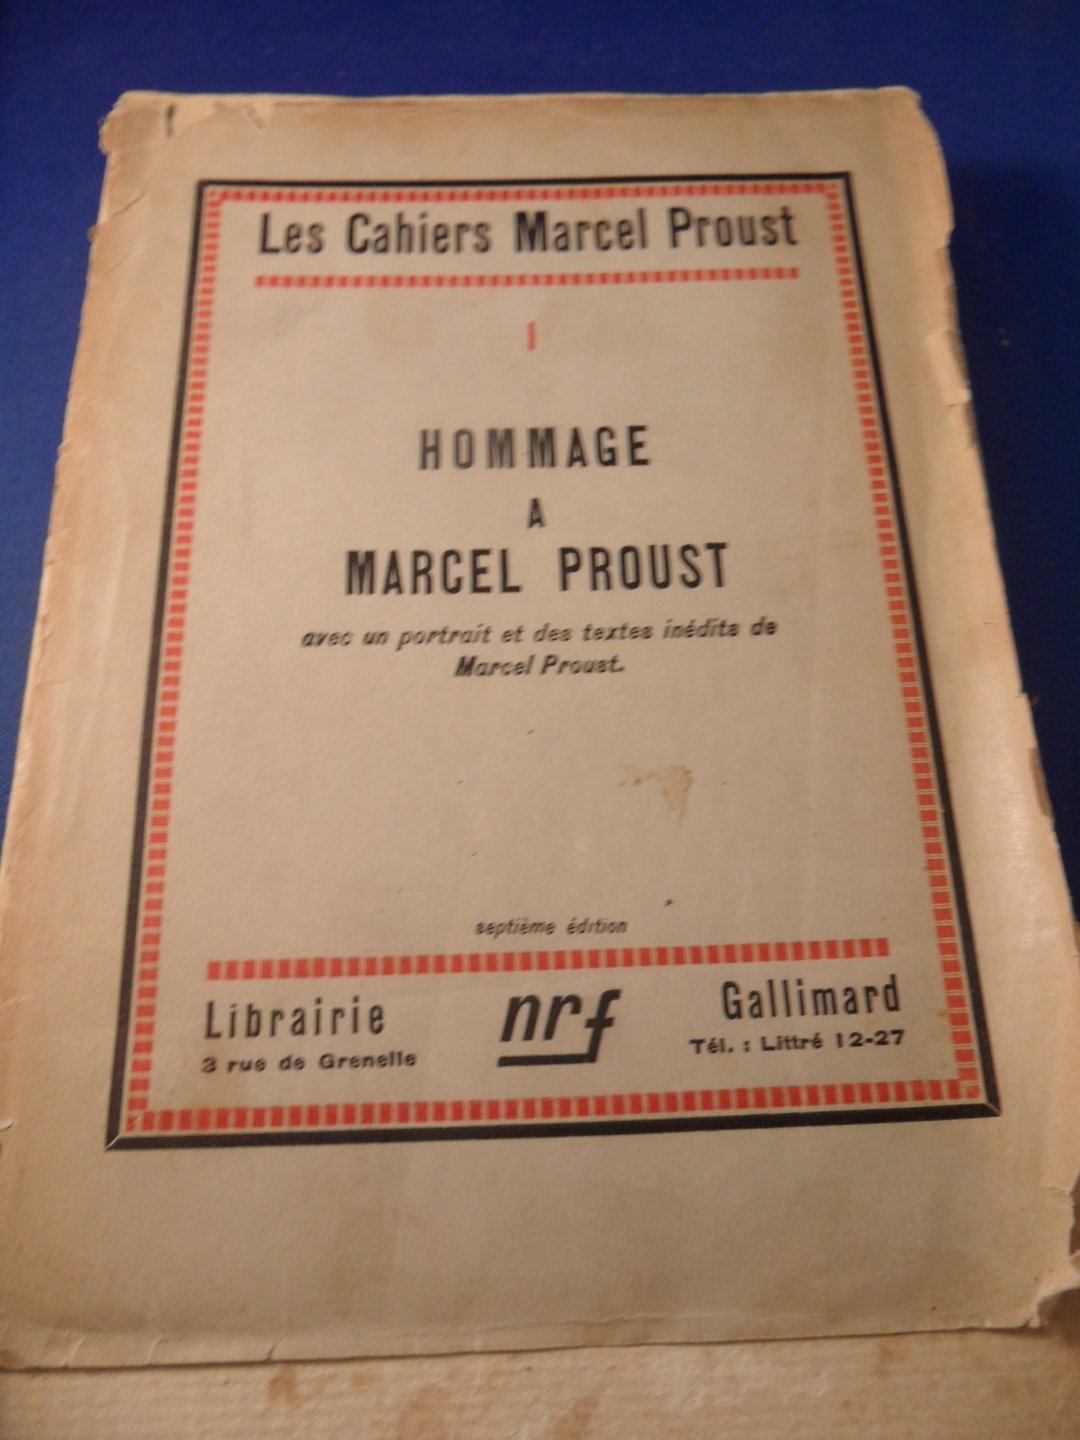 Gallimard, Gaston - Morand, Paul  -  Valery, Paul - ea - Hommage a Marcel Proust, Les Cahiers Marcel Proust. Avec un portrait et des textes inédits